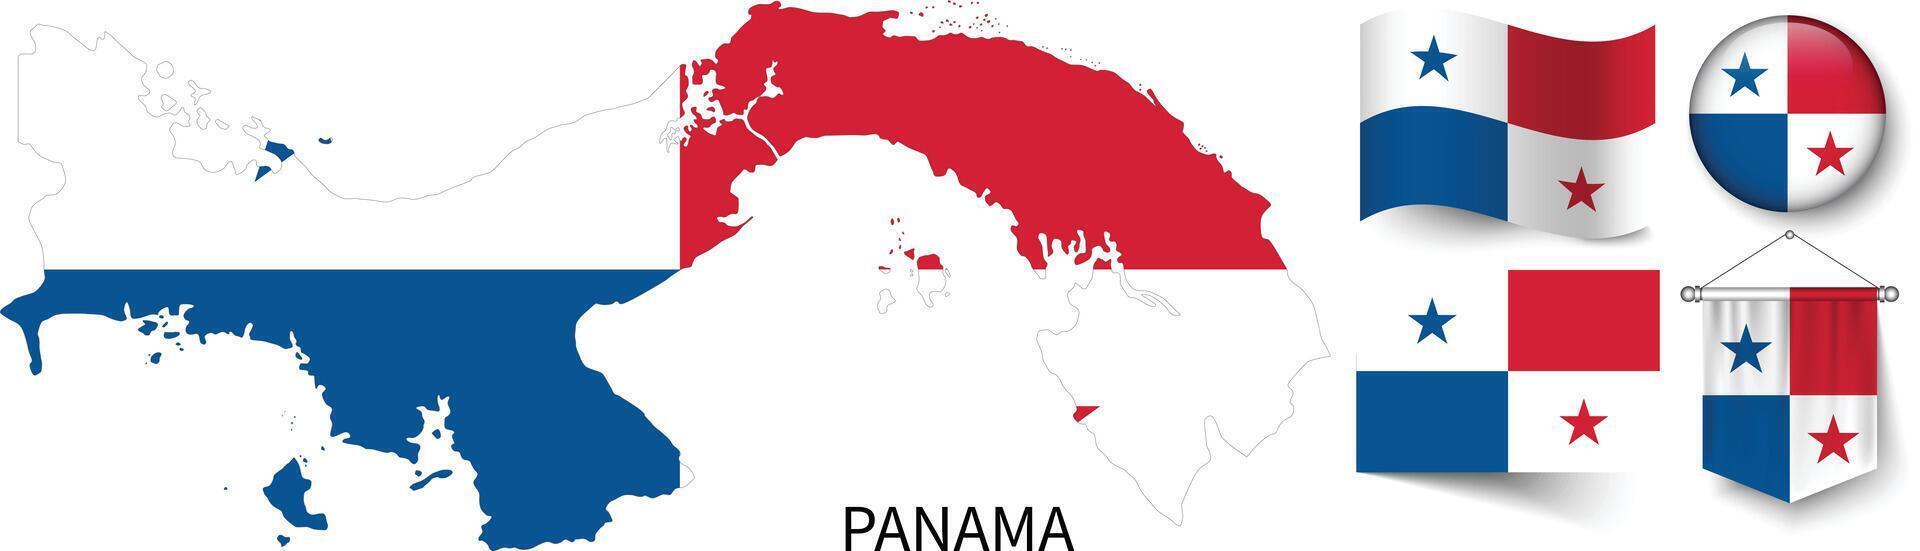 de divers patronen van de Panama nationaal vlaggen en de kaart van panama's borders vector